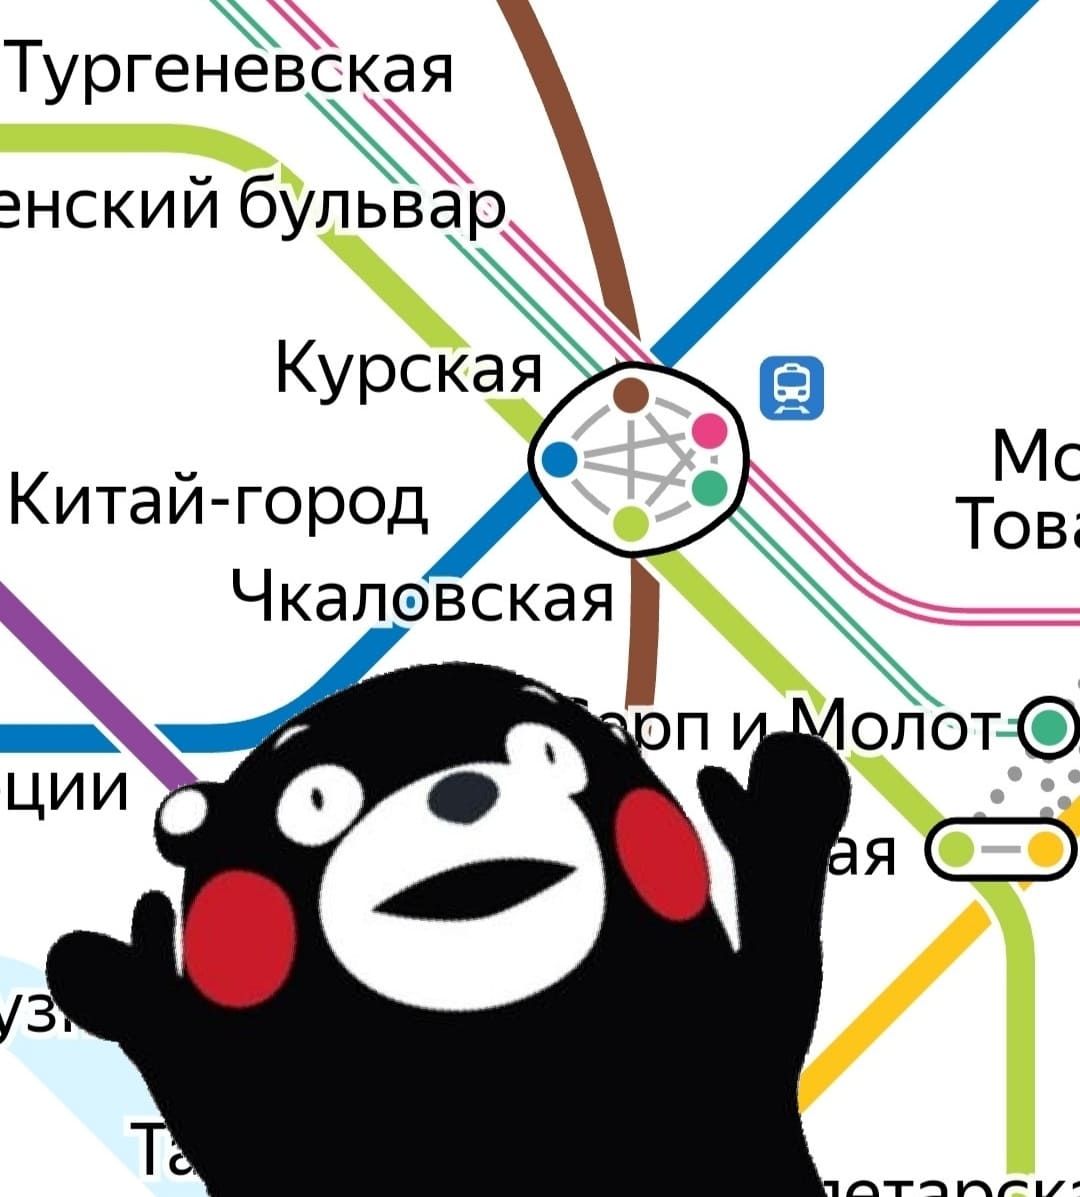 И станция метро «Курская» превращается...⁠⁠
*Пентаграмма*